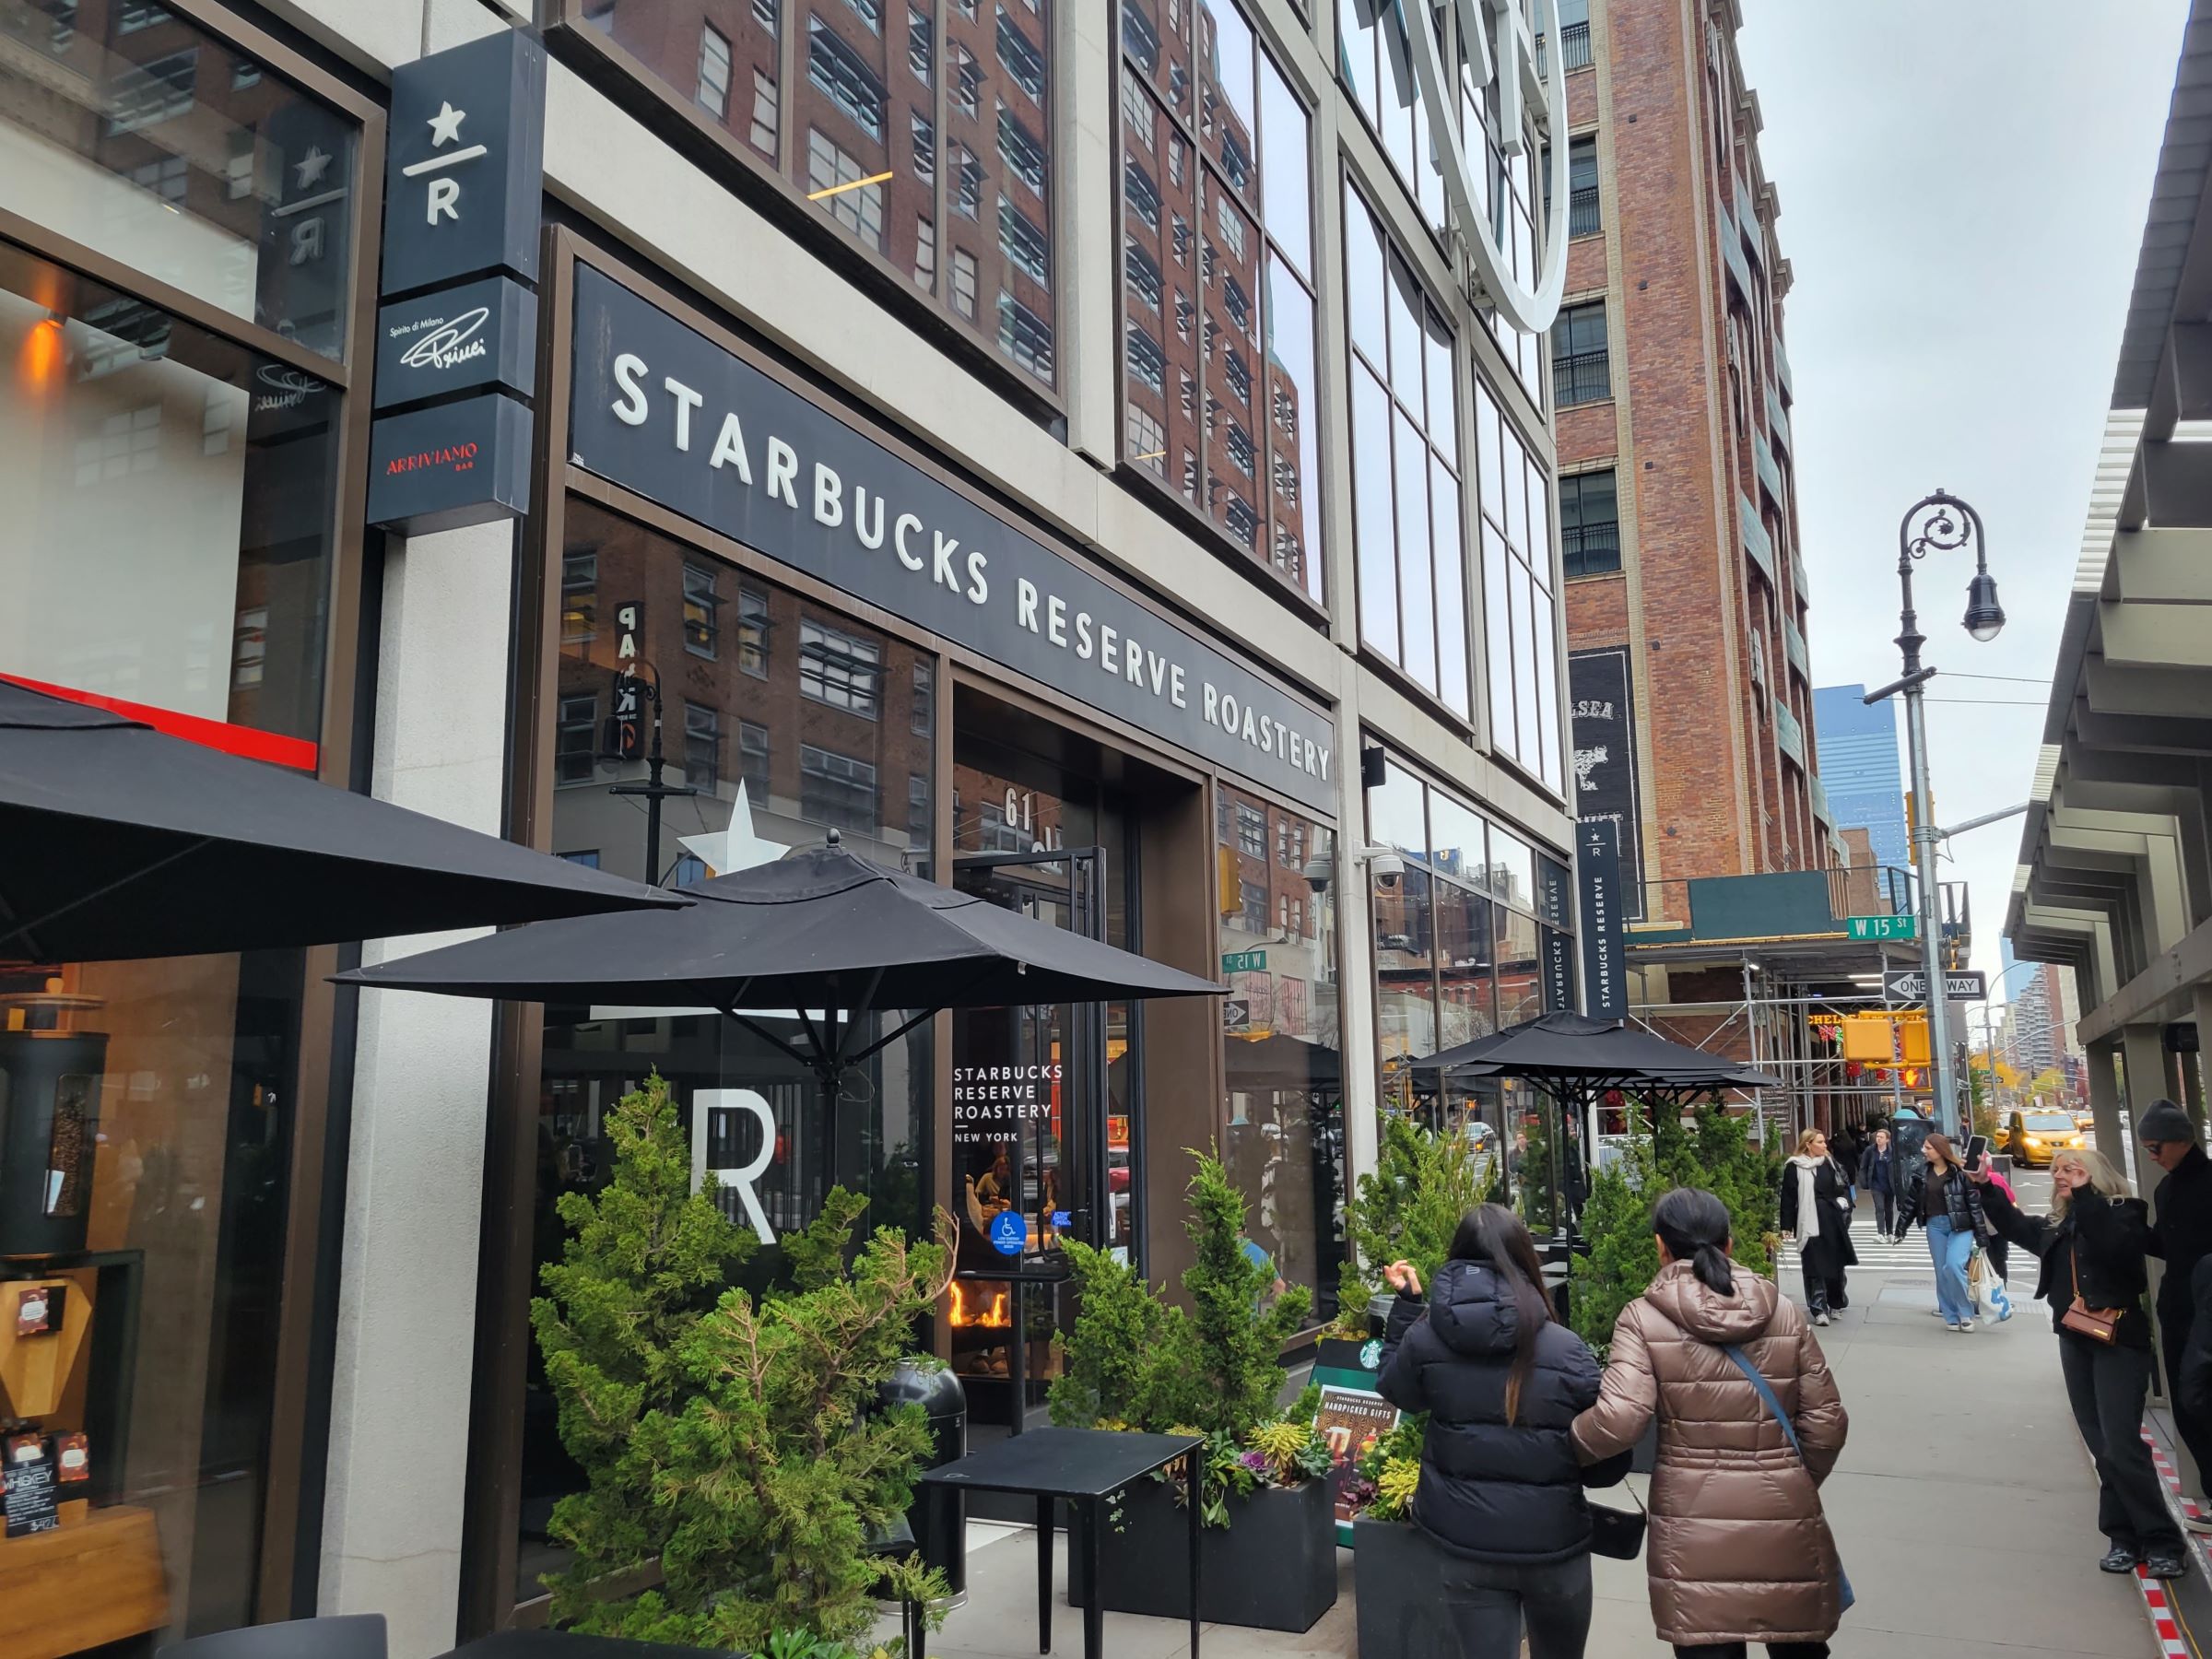 전세계 6곳밖에 없는 스타벅스 리저브 로스터리(Starbucks Reserve Roastery)인 뉴욕 맨하탄 첼시 지점